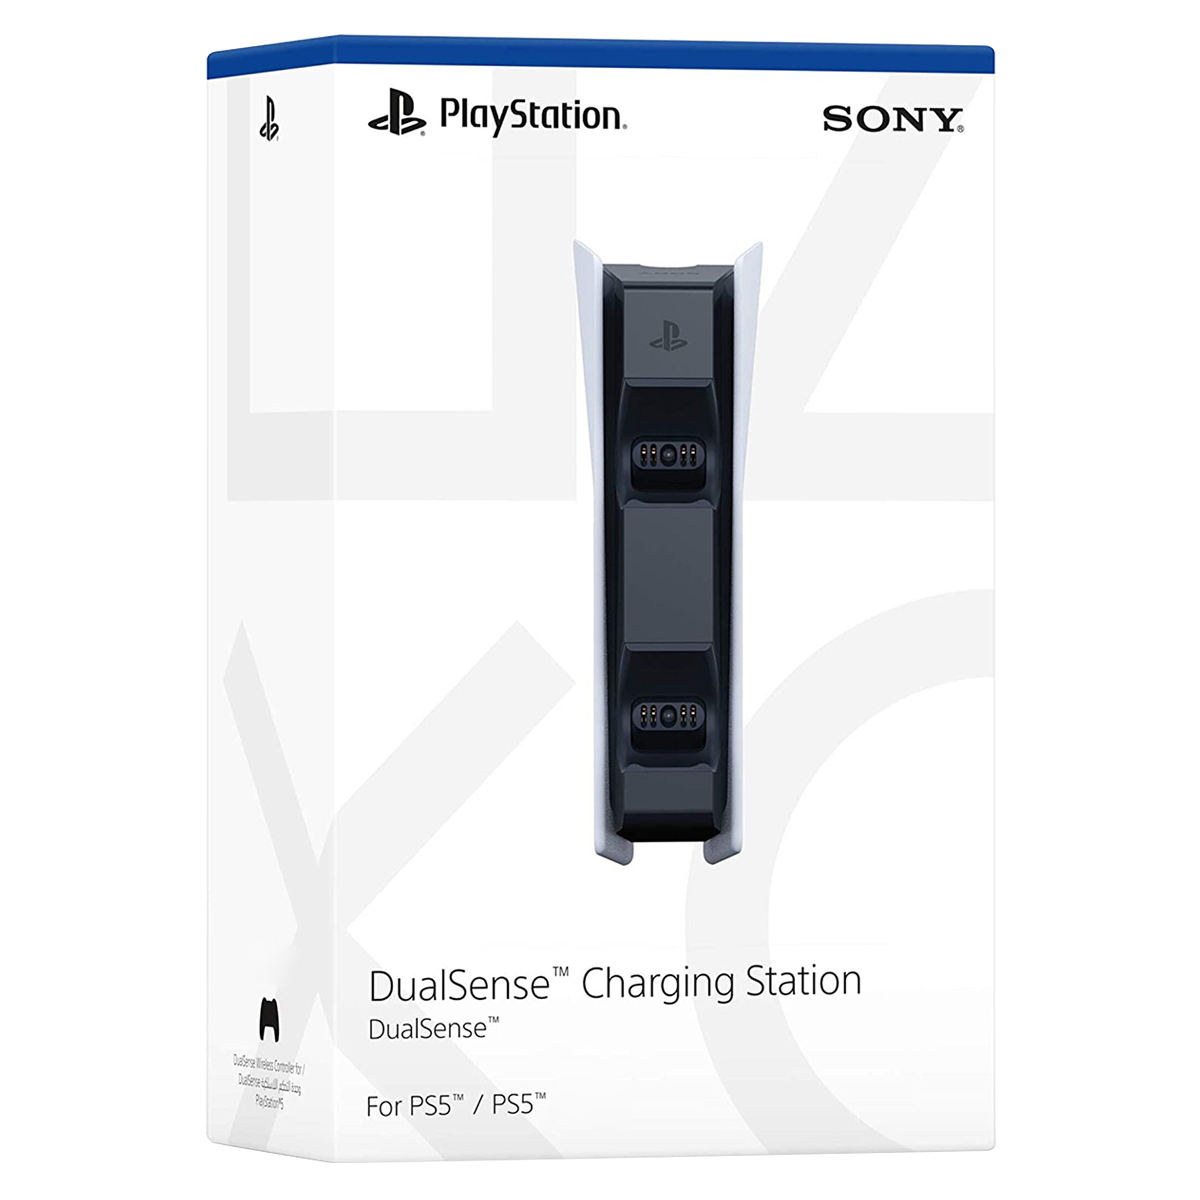 مجموعه کنسول بازی سونی مدل PlayStation 5 Digital ظرفیت 825 گیگابایت به همراه هدست و پایه شارژر و دسته اضافی